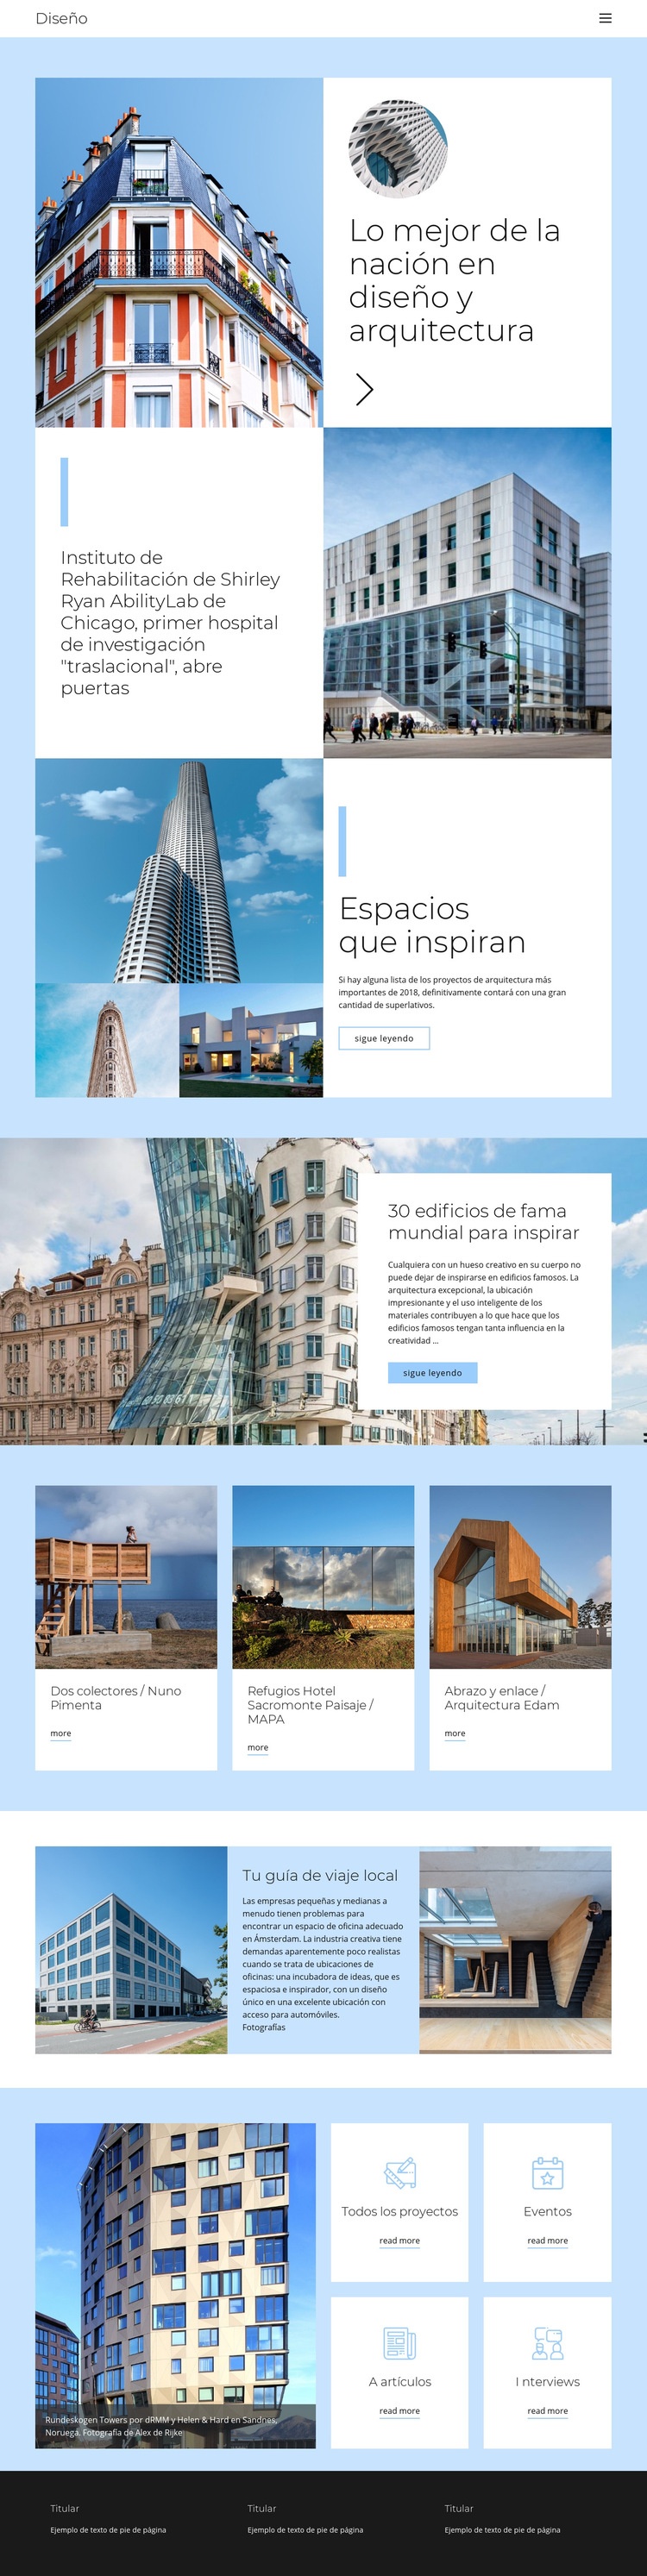 Guía de arquitectura de la ciudad Plantilla HTML5